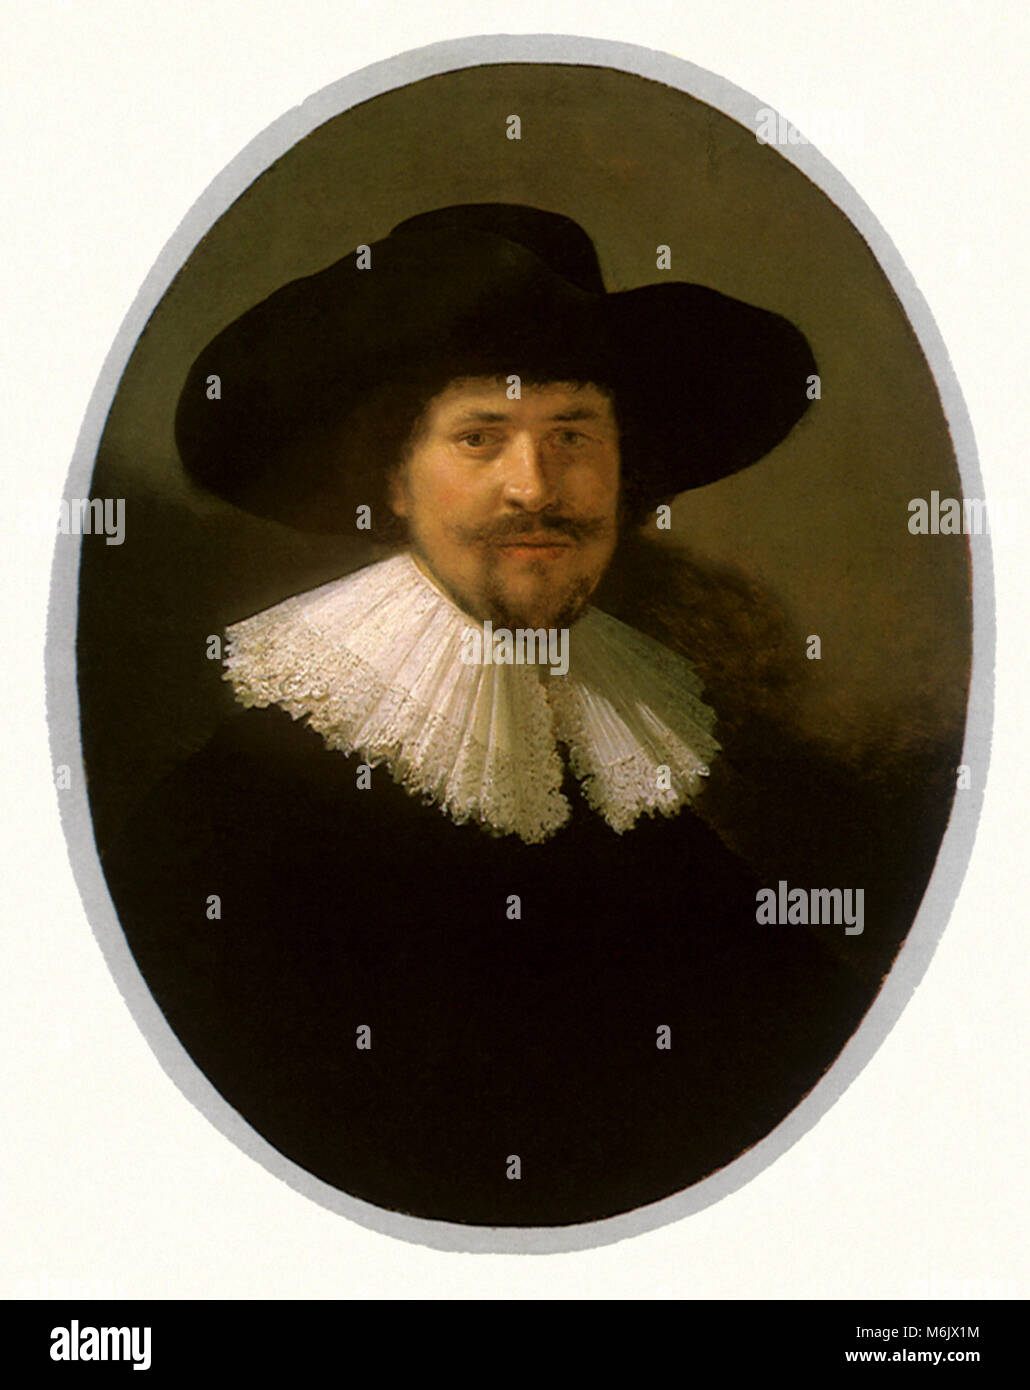 Retrato de un hombre con una barba y un Wide-Brimmed puntiagudo sombrero, el Taller de Rembrandt, 1634. Foto de stock